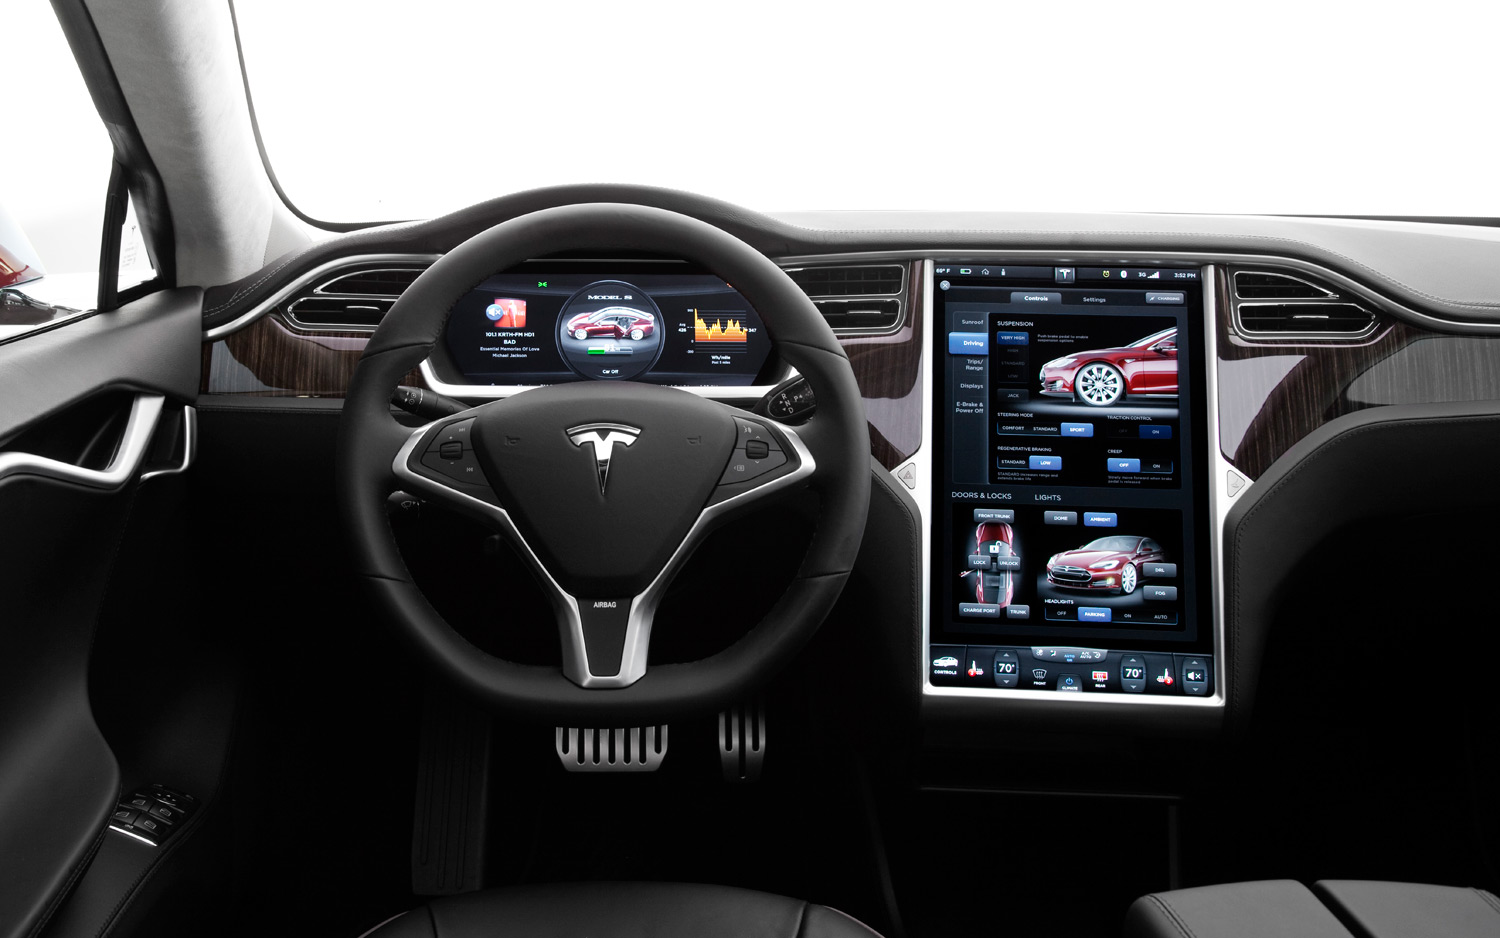 Autorización Lograr Humano La marca de coches Tesla se encumbra | Zonamovilidad.es